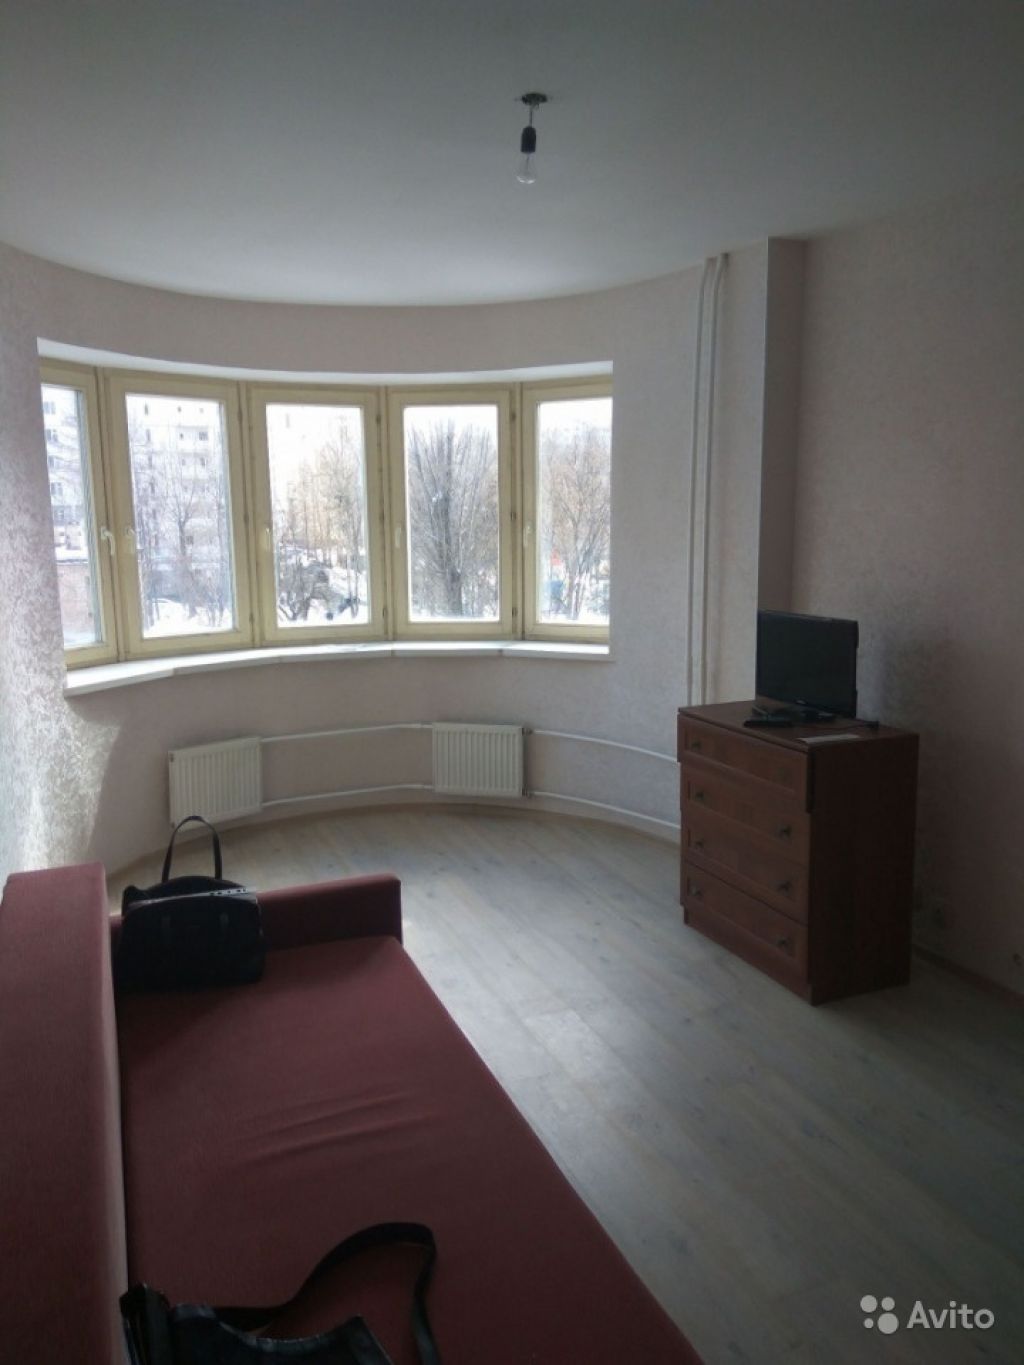 Продам квартиру 1-к квартира 45 м² на 4 этаже 10-этажного монолитного дома в Москве. Фото 1